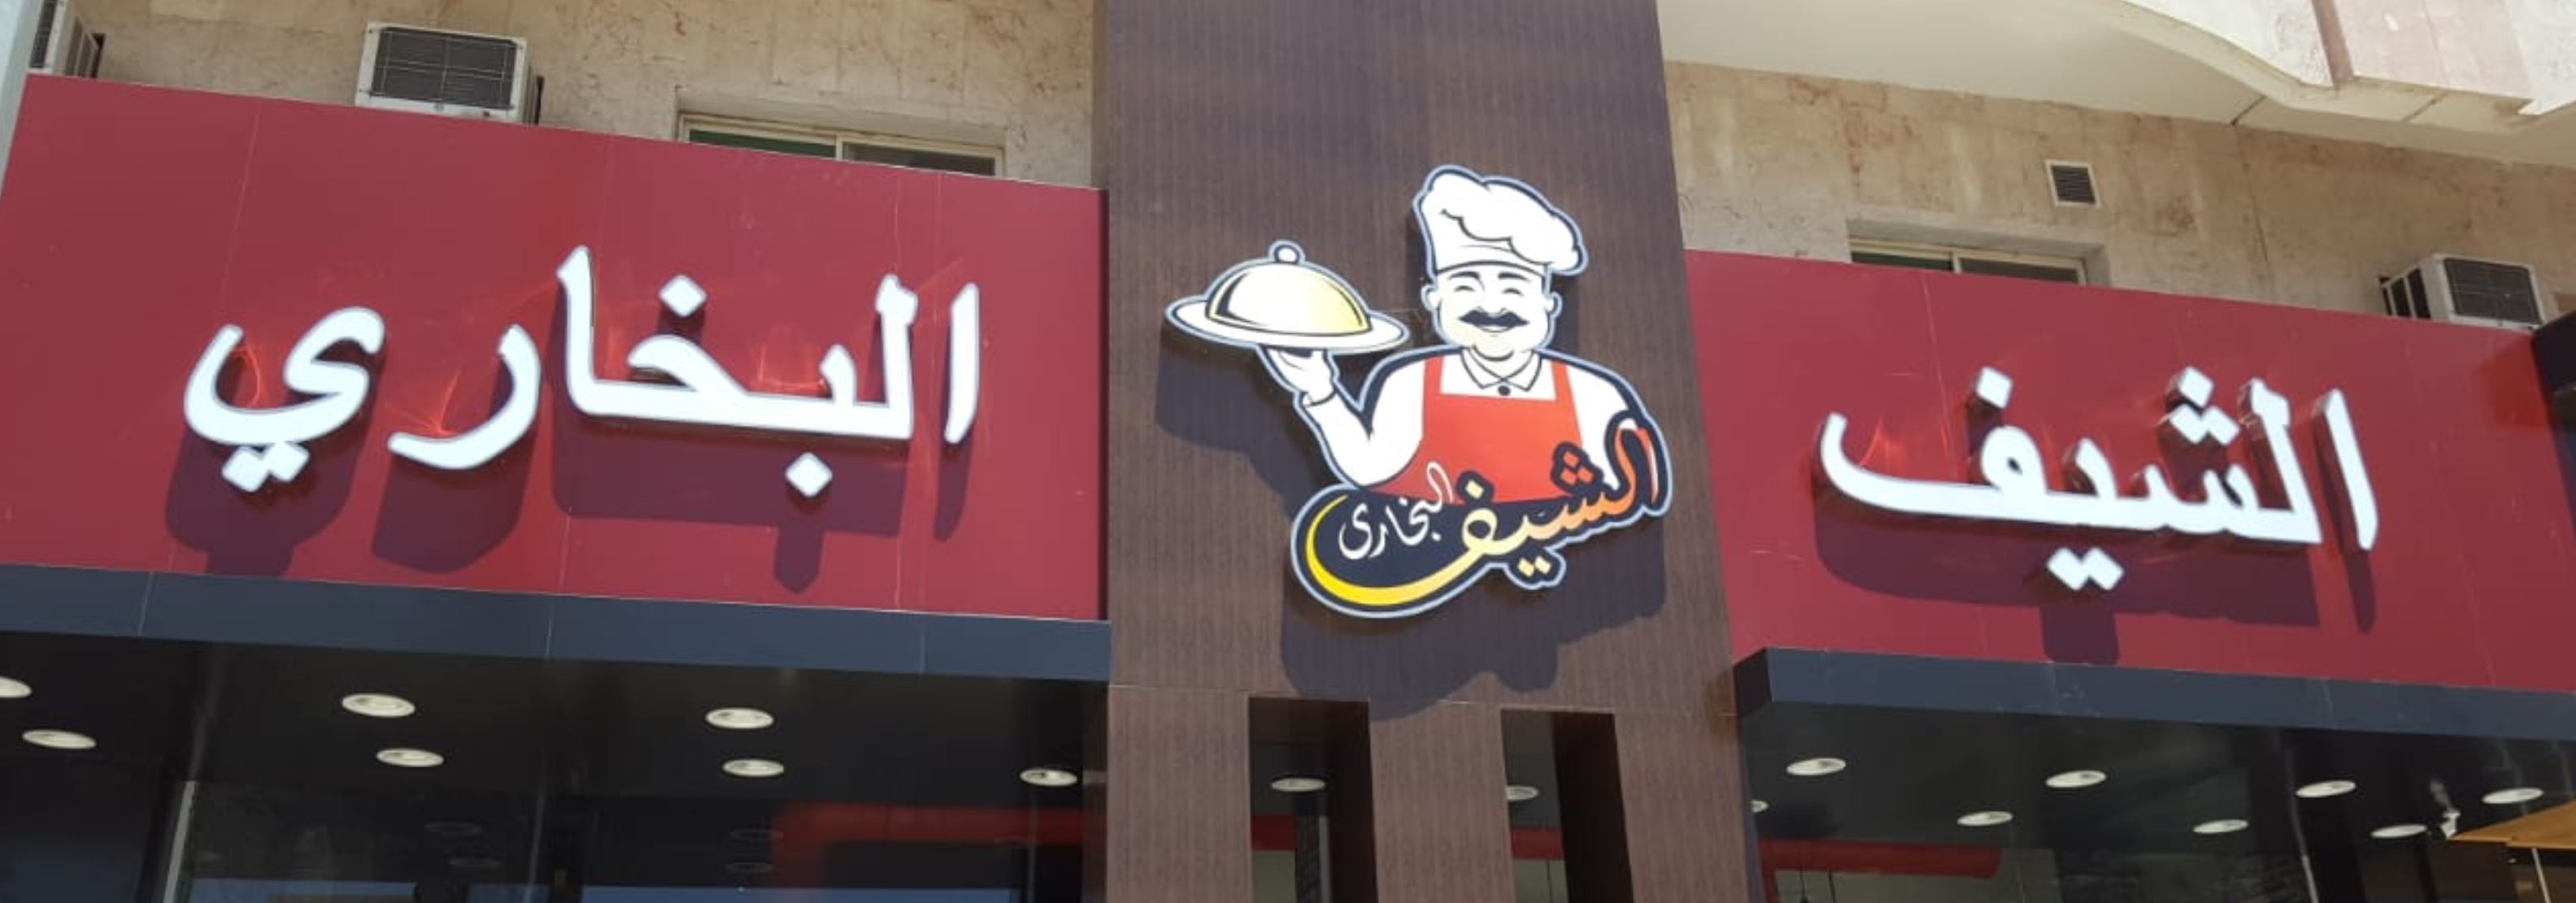 افضل مطعم بخاري في غرب الرياض